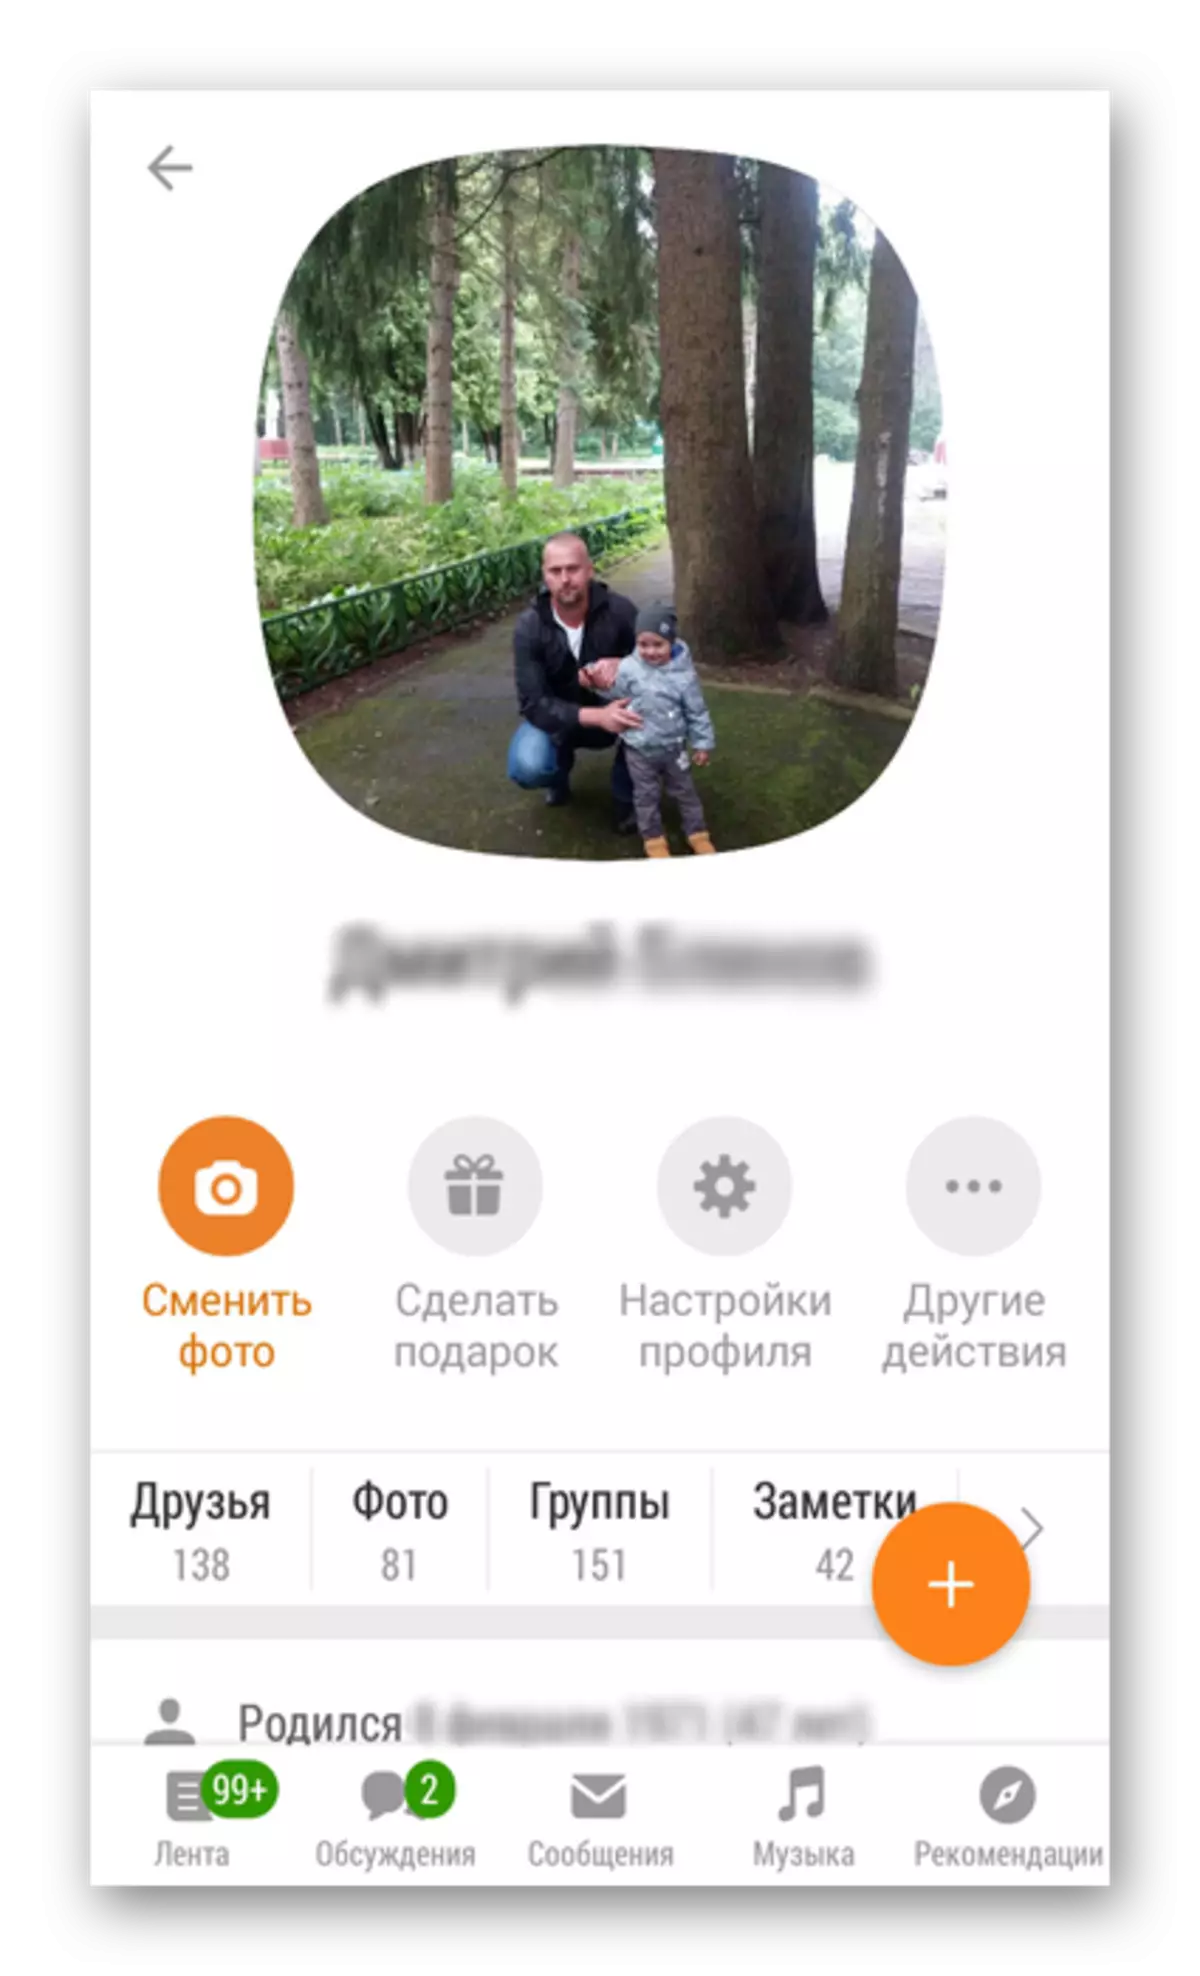 Το προφίλ άνοιξε στην εφαρμογή Odnoklassniki